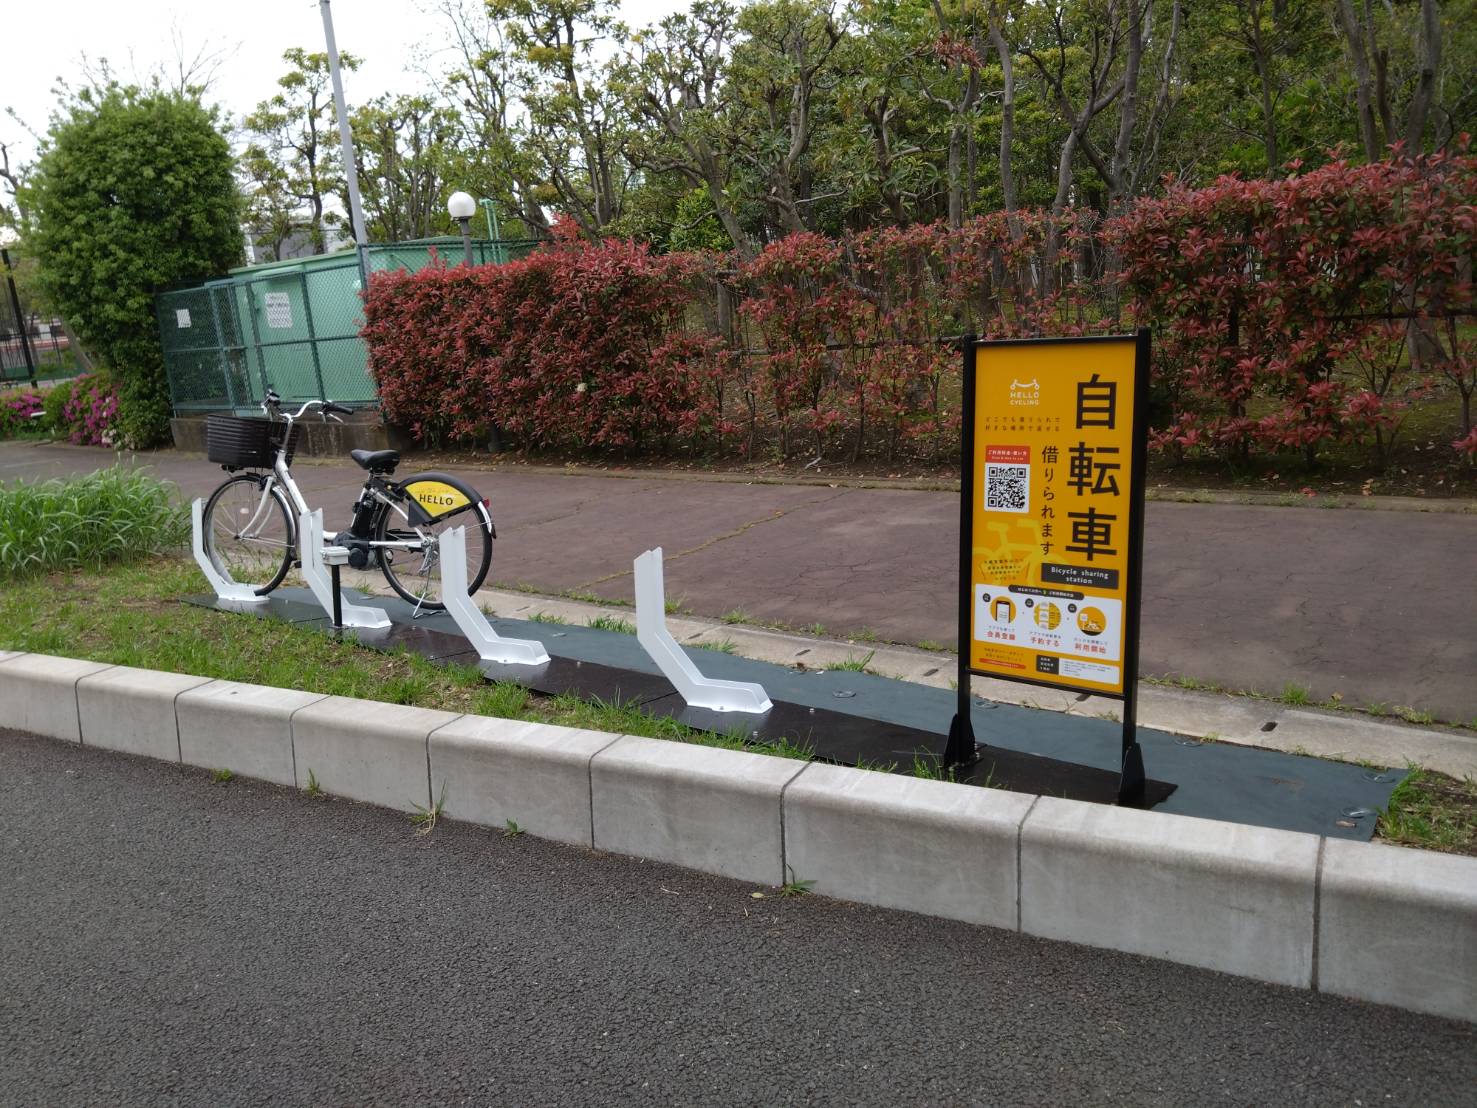 泥亀一丁目公園付近 (HELLO CYCLING ポート) image